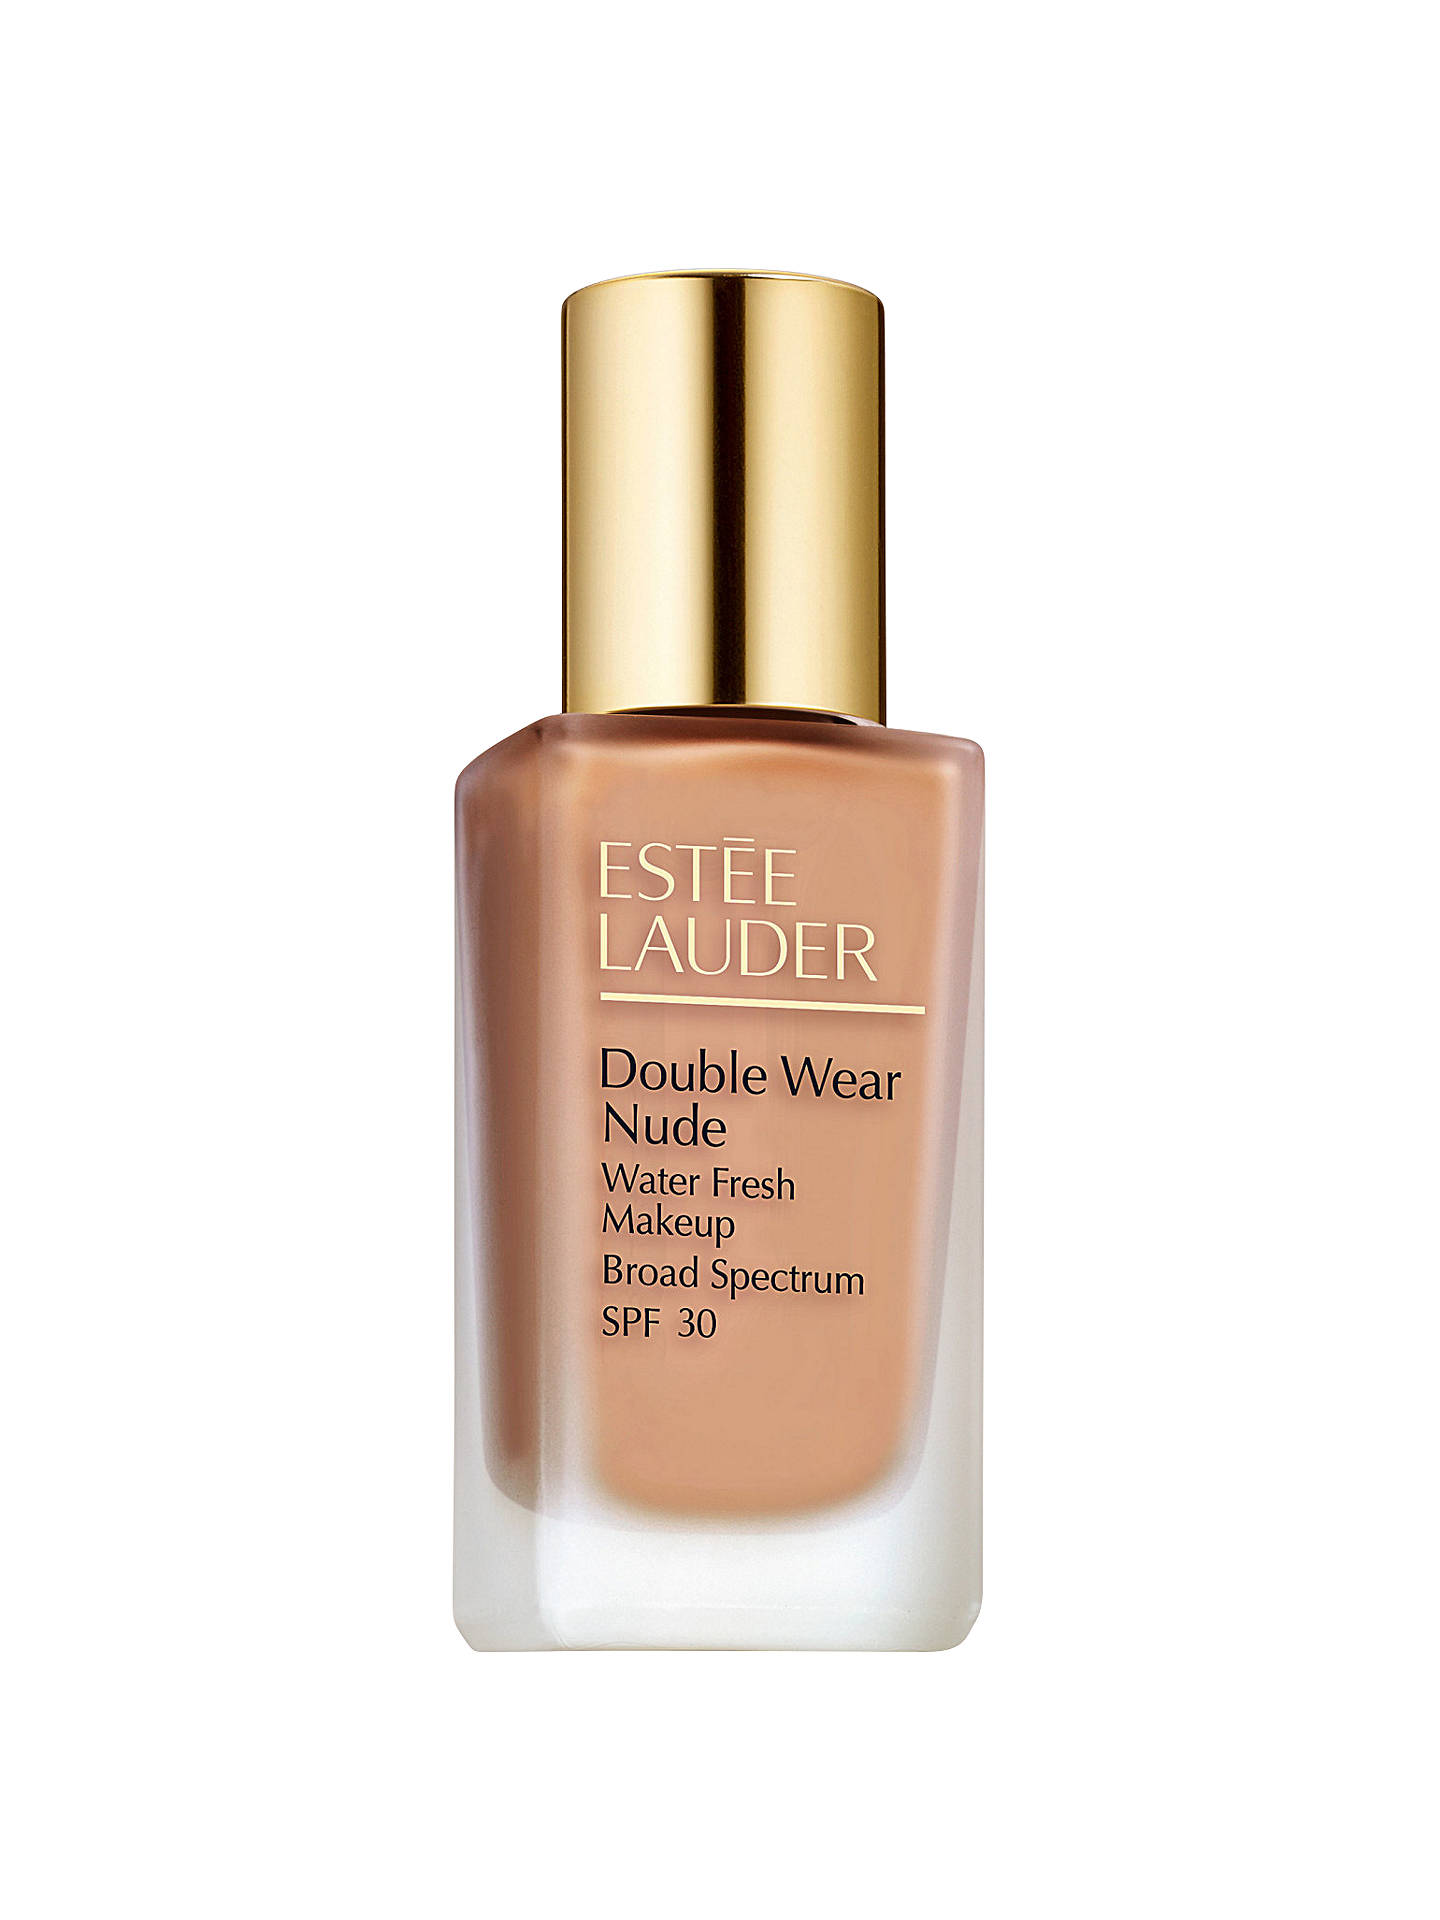 Estée Lauder Double Wear Nude Water Fresh Makeup, SPF30 at 